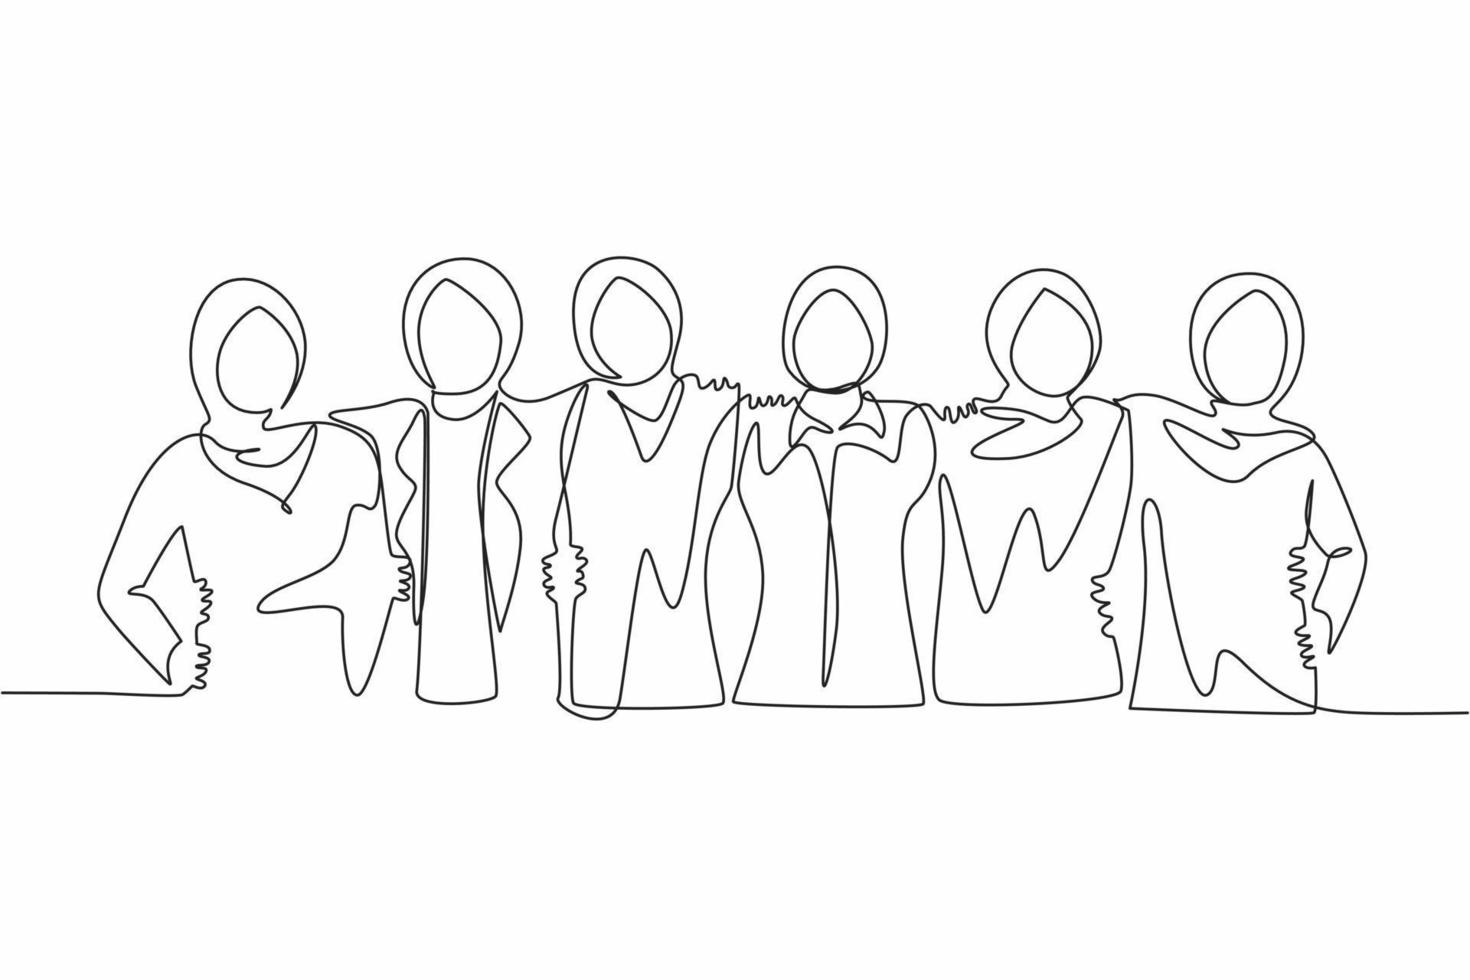 kontinuerlig en rad ritning grupp av arabiska kvinnor kramas. kvinnor tillsammans. glad vänskapsdag med olika vänner till människor som kramas tillsammans för att fira en speciell händelse. enda linje design vektor